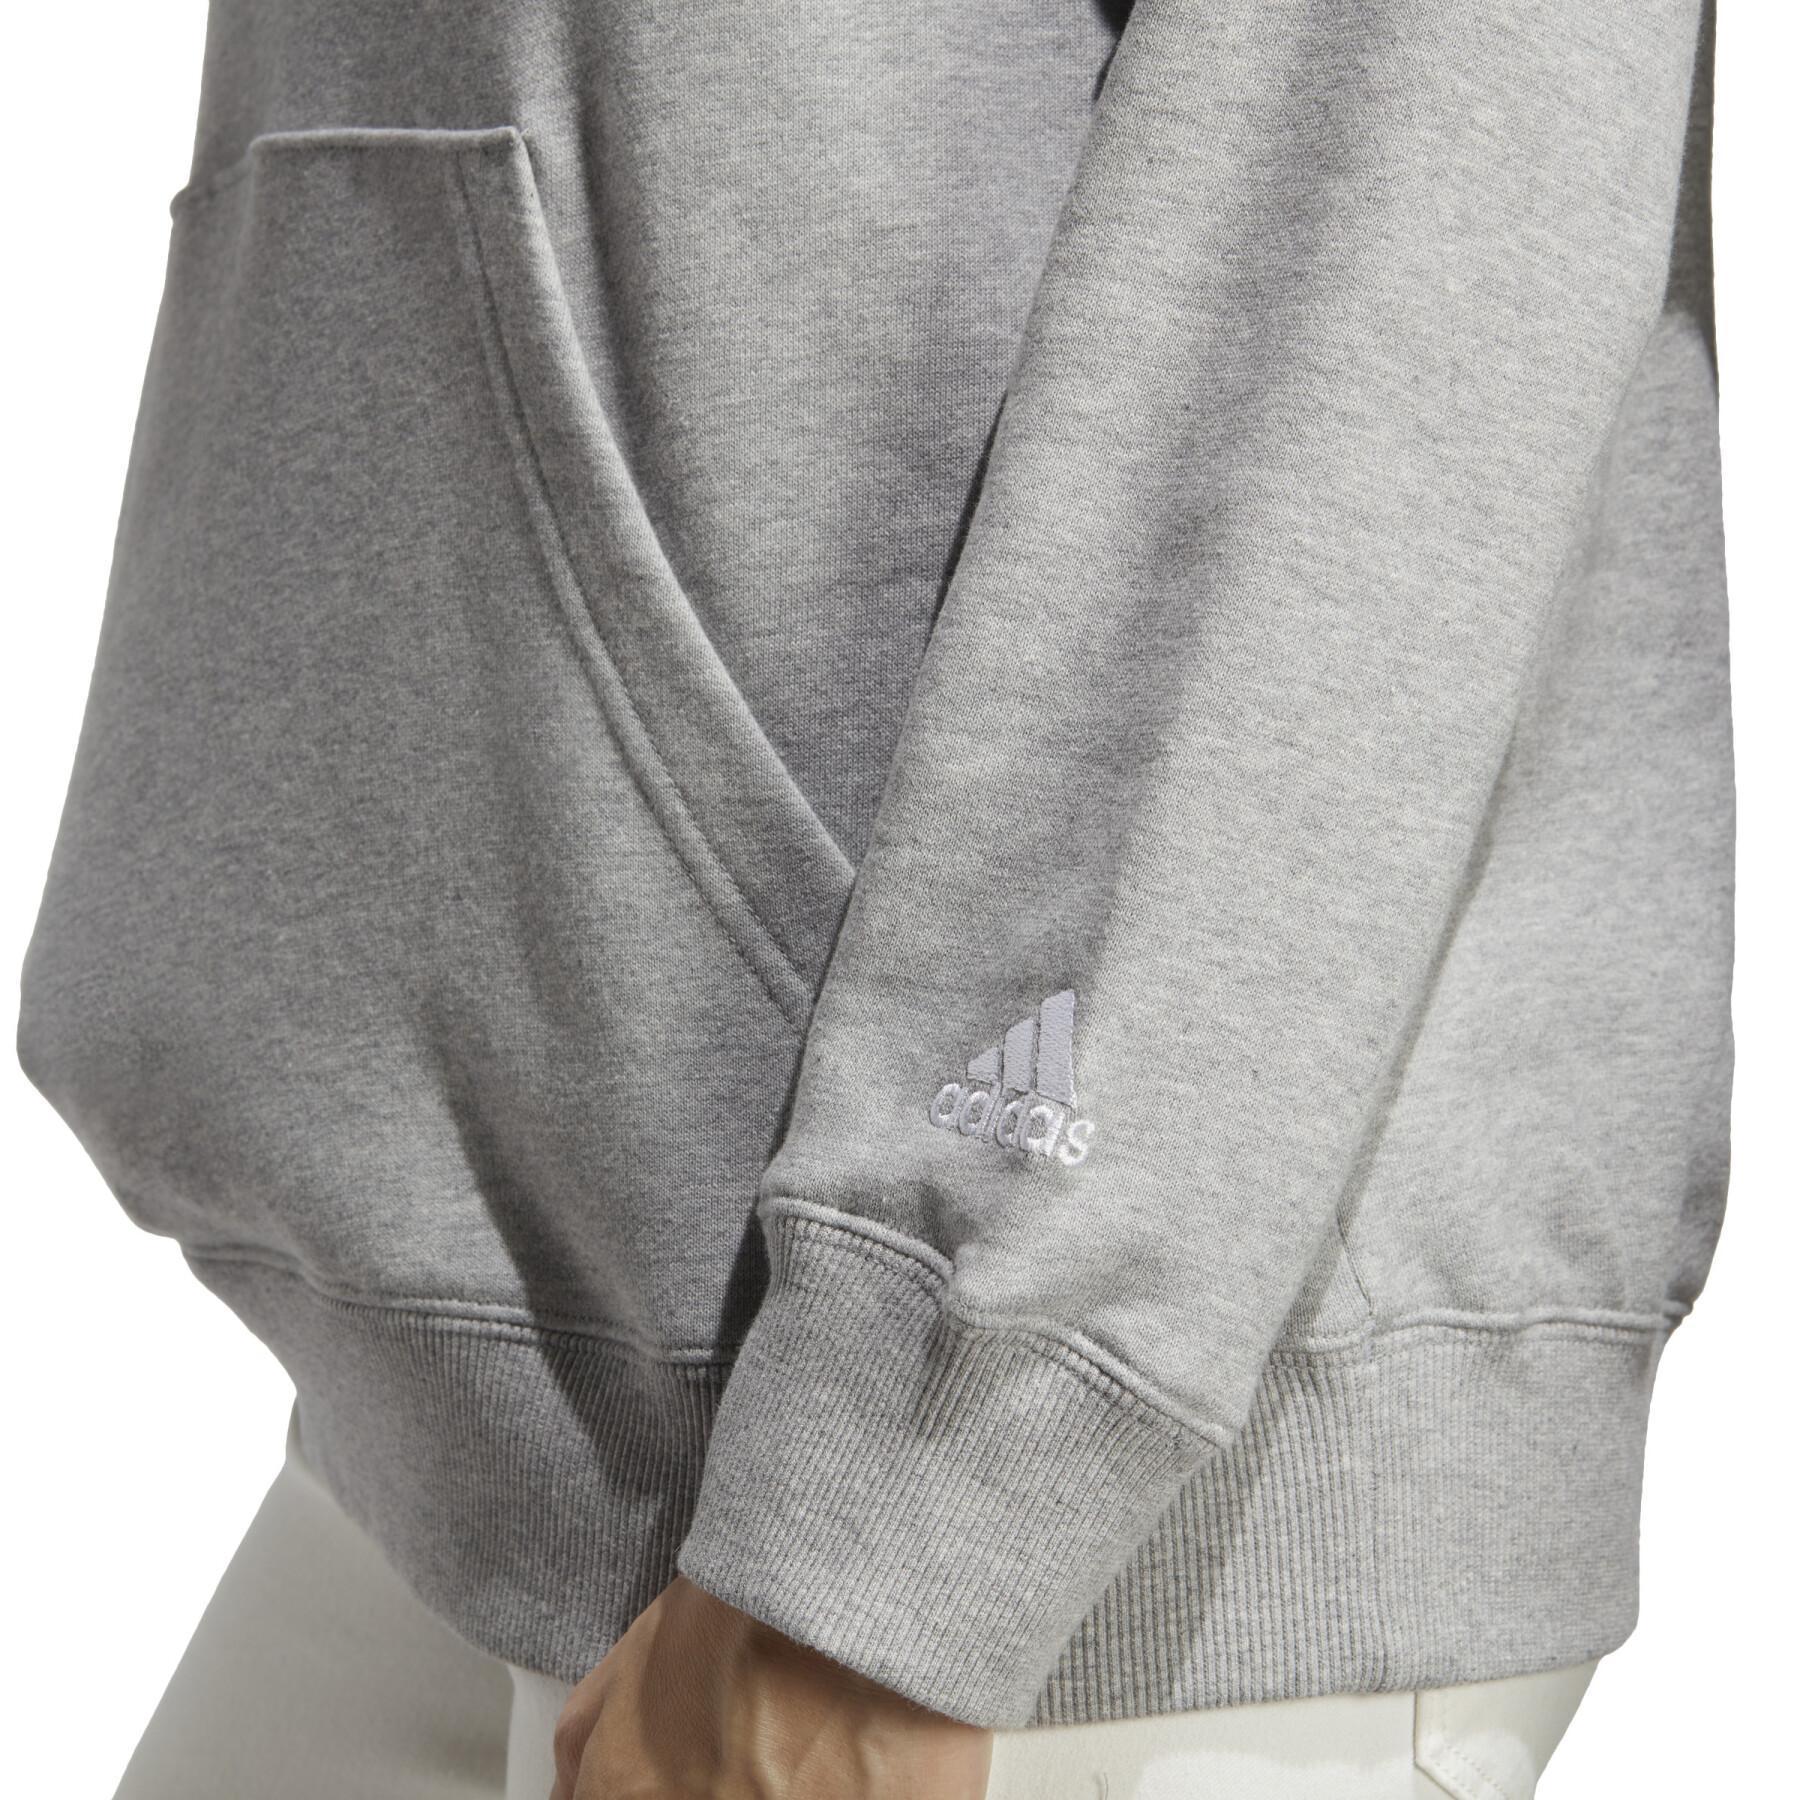 Sweatshirt linhagem encapuzada de mulheres adidas Essentials